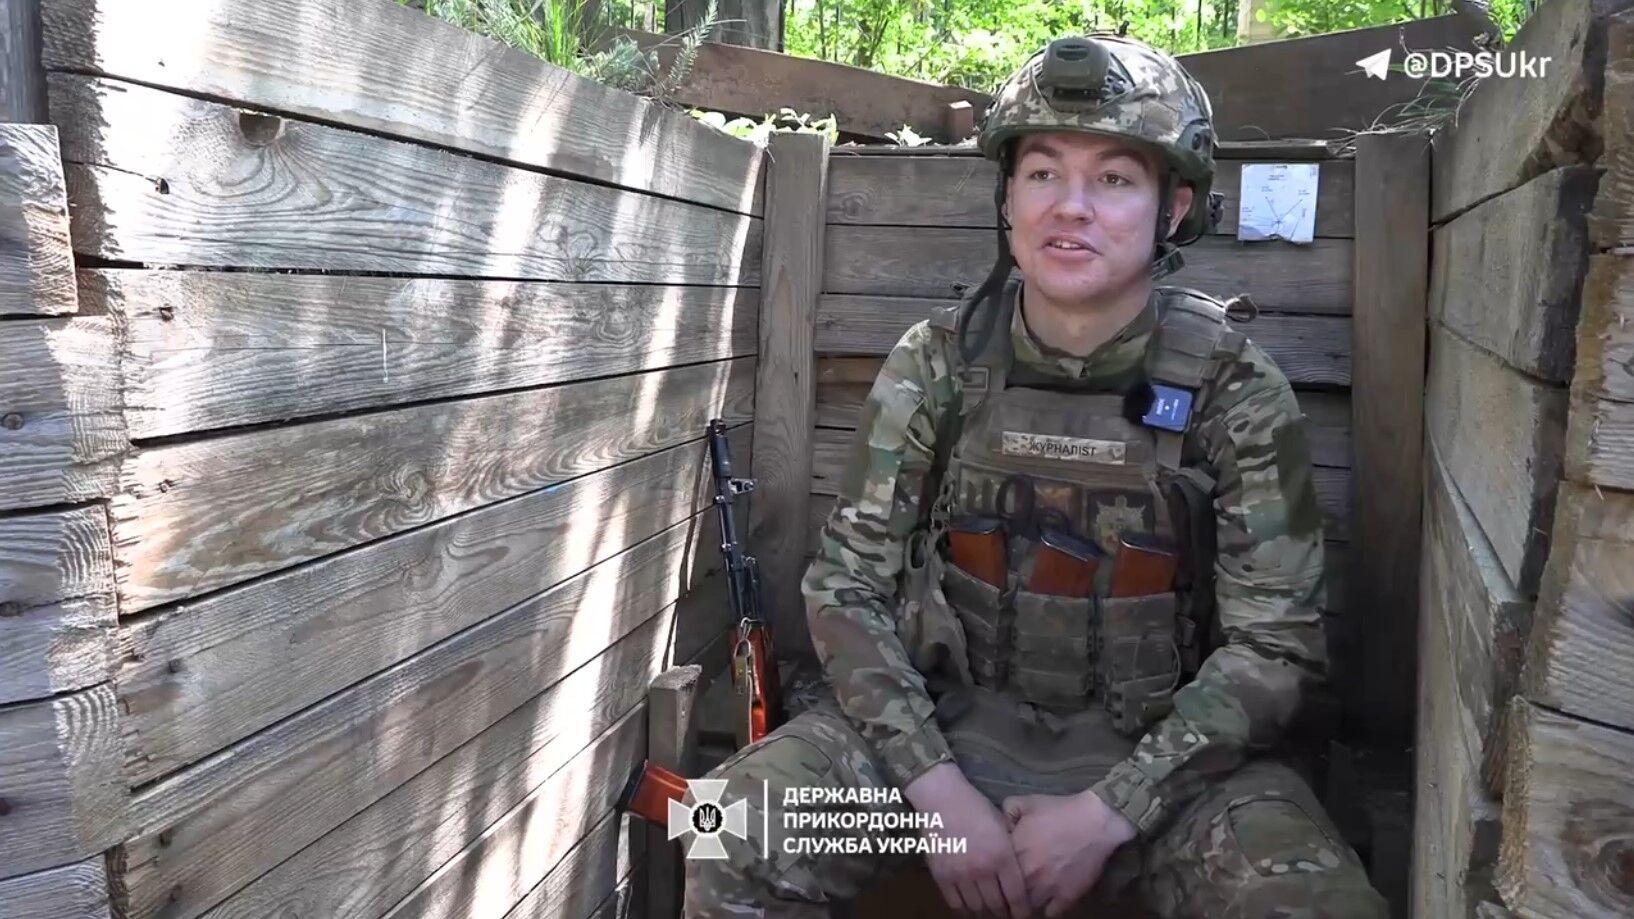 Кричав, що свій: мешканець Луганщини, якого мобілізували окупанти, вийшов на позиції українських прикордонників. Відео